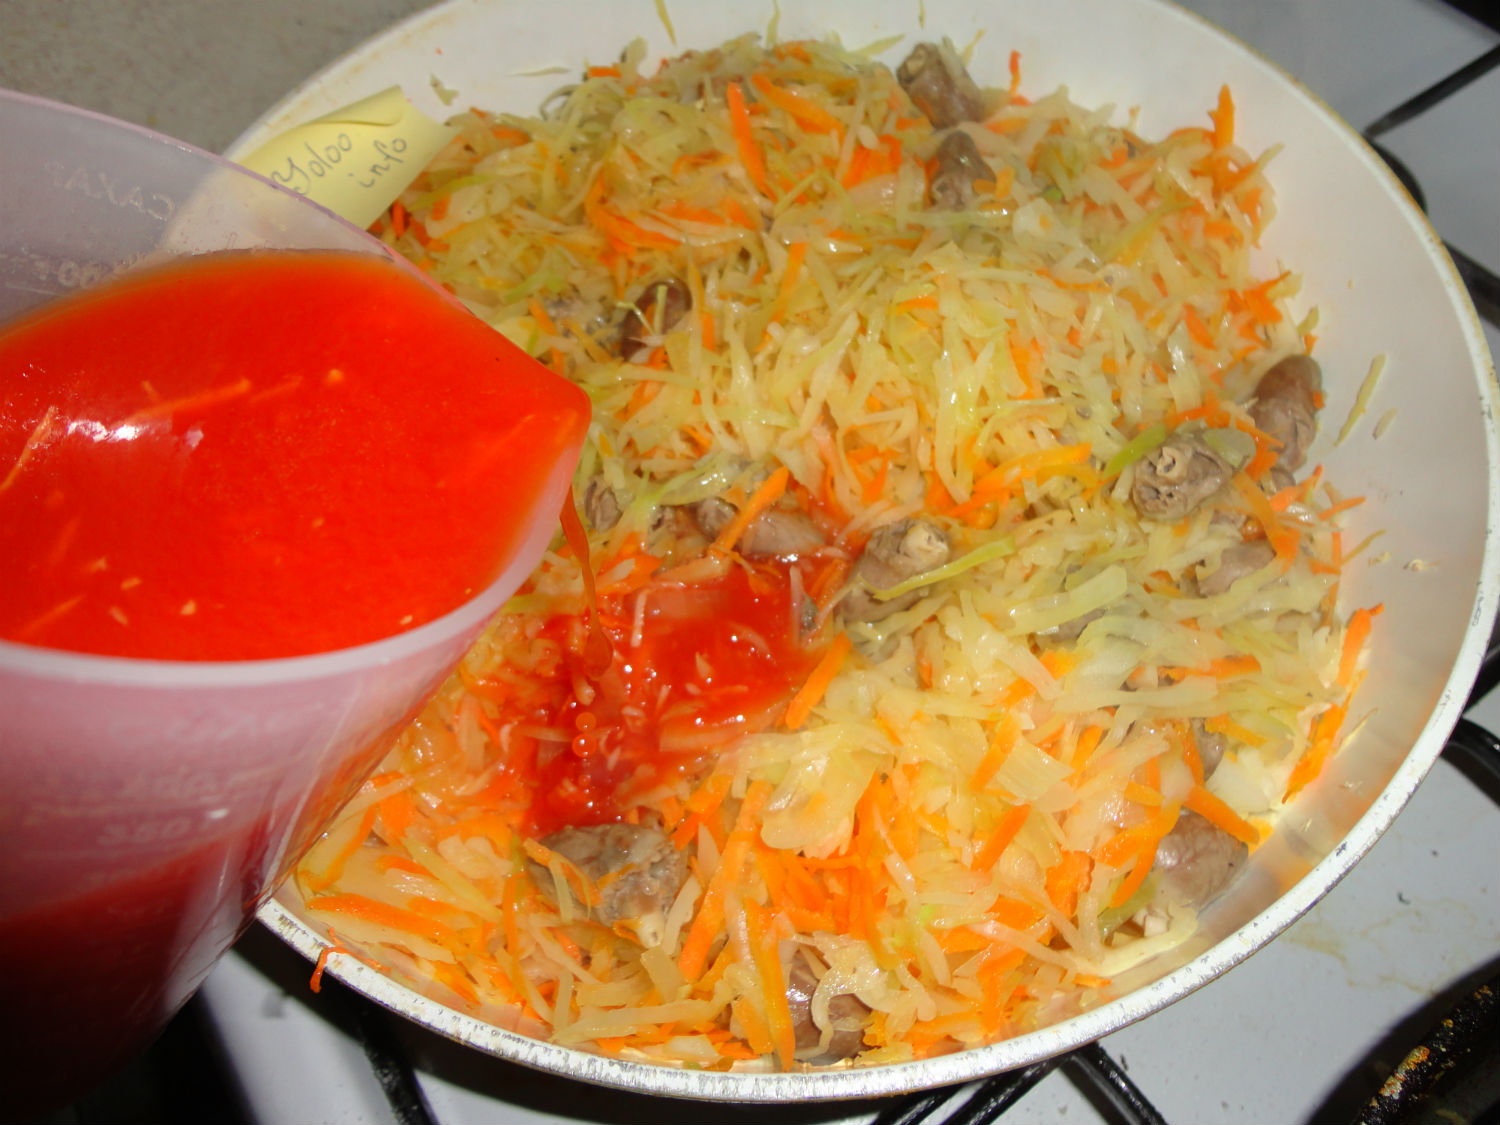 разведенную томатную пасту вливают на сковороду с капустой и сердечками